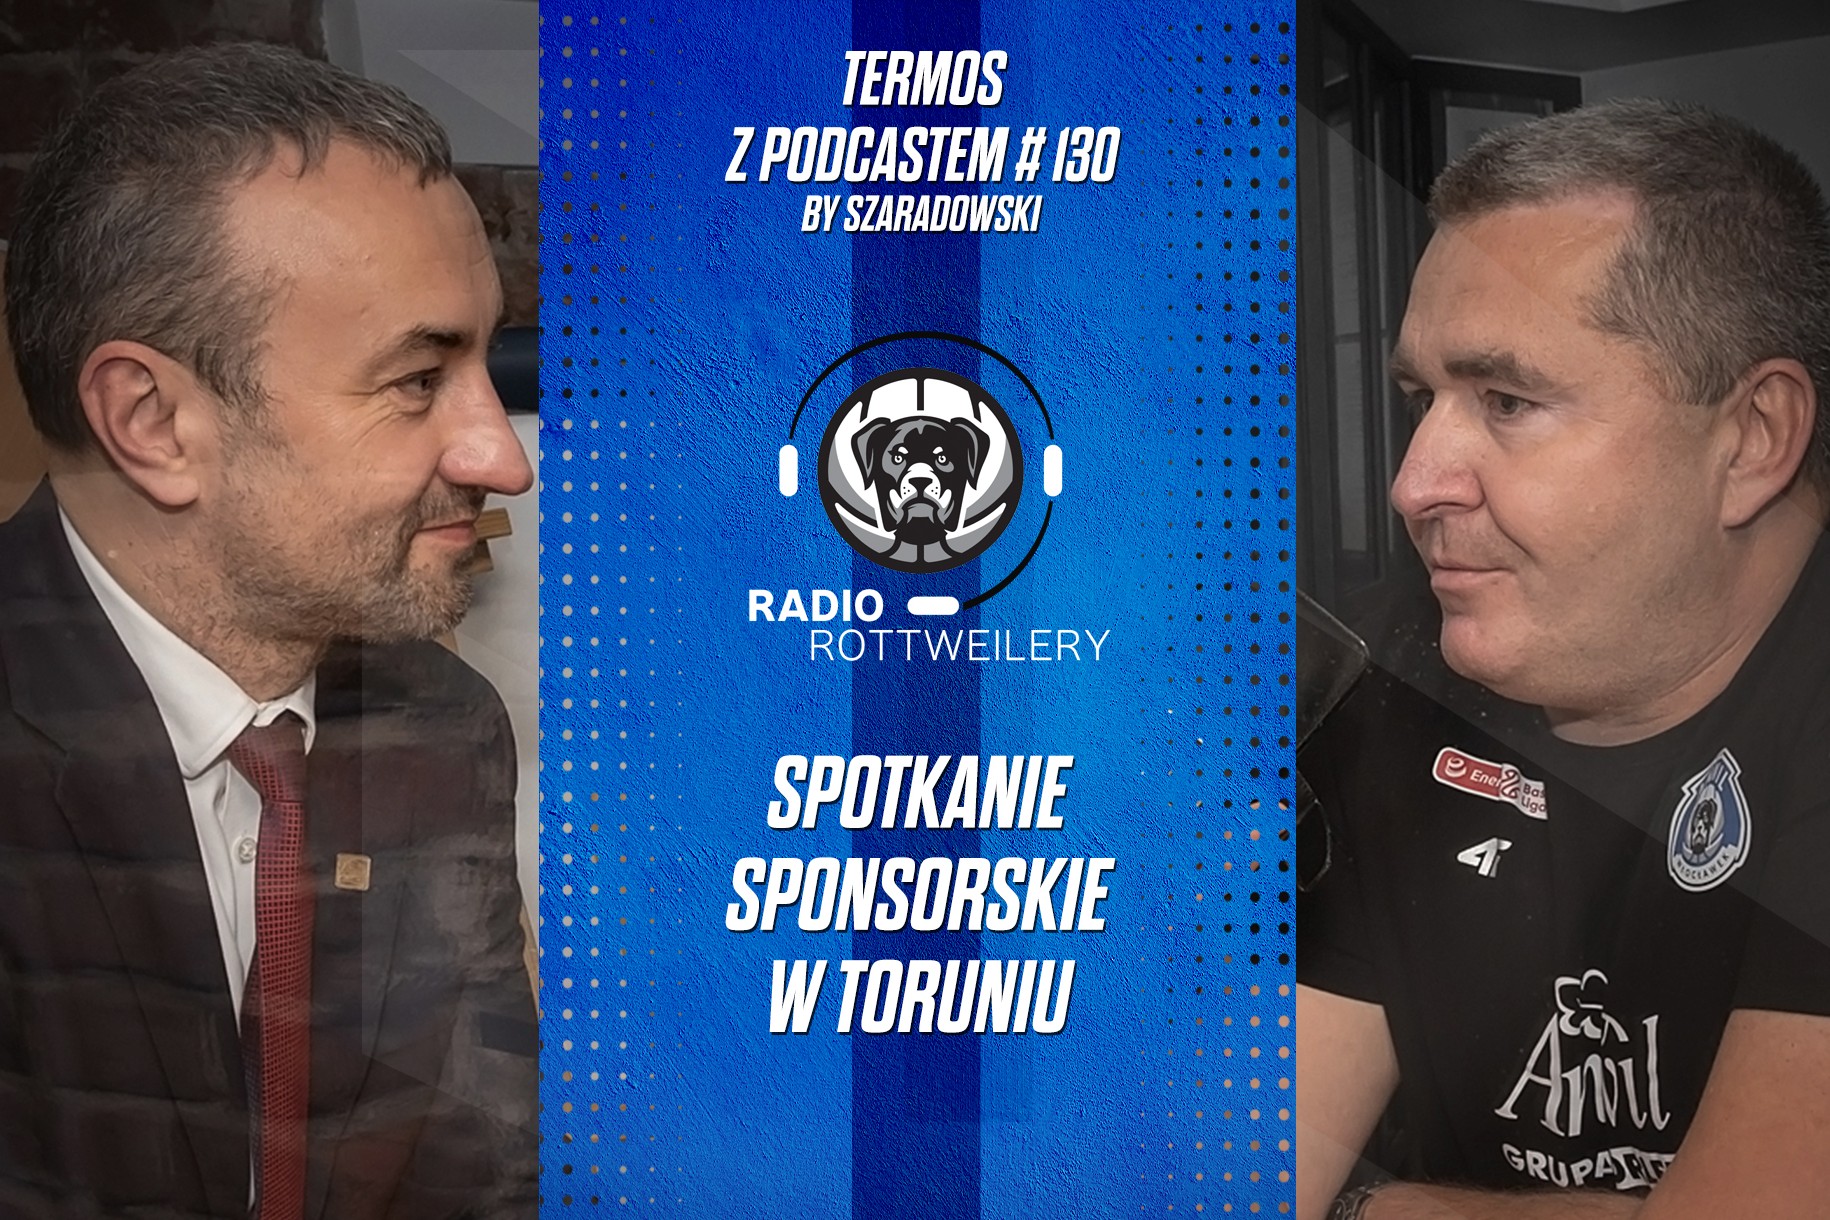 Termos z Podcastem #130: Spotkanie sponsorskie w Toruniu